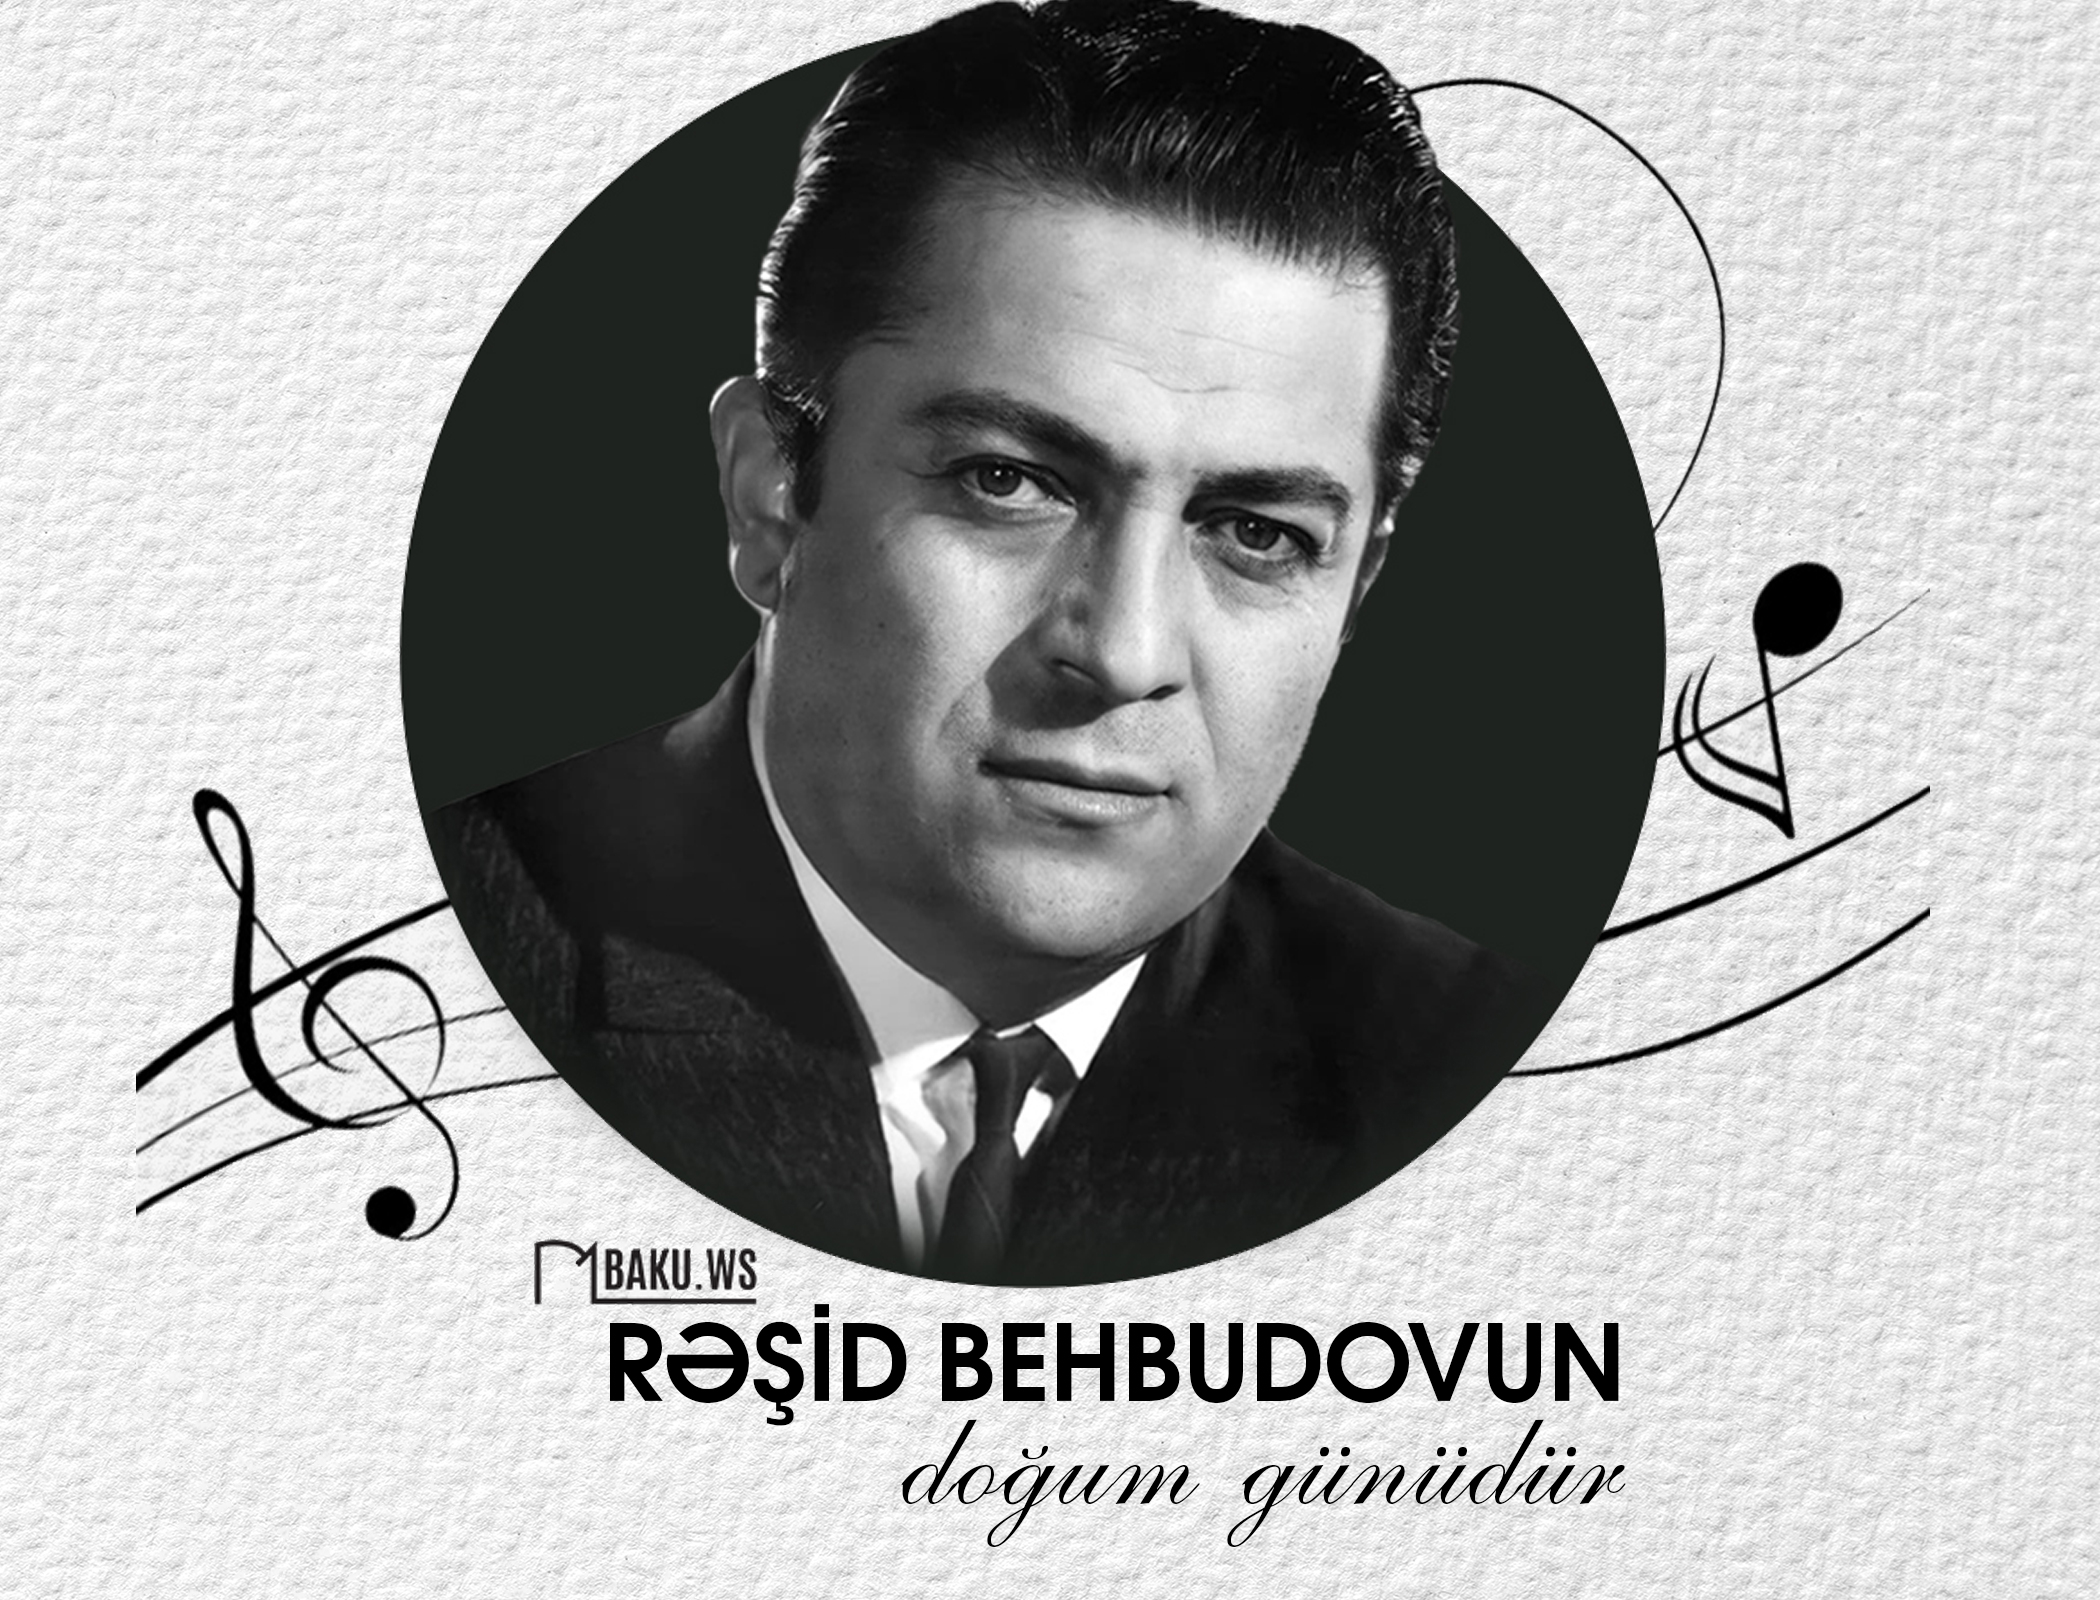 Bu gün Rəşid Behbudovun doğum günüdür